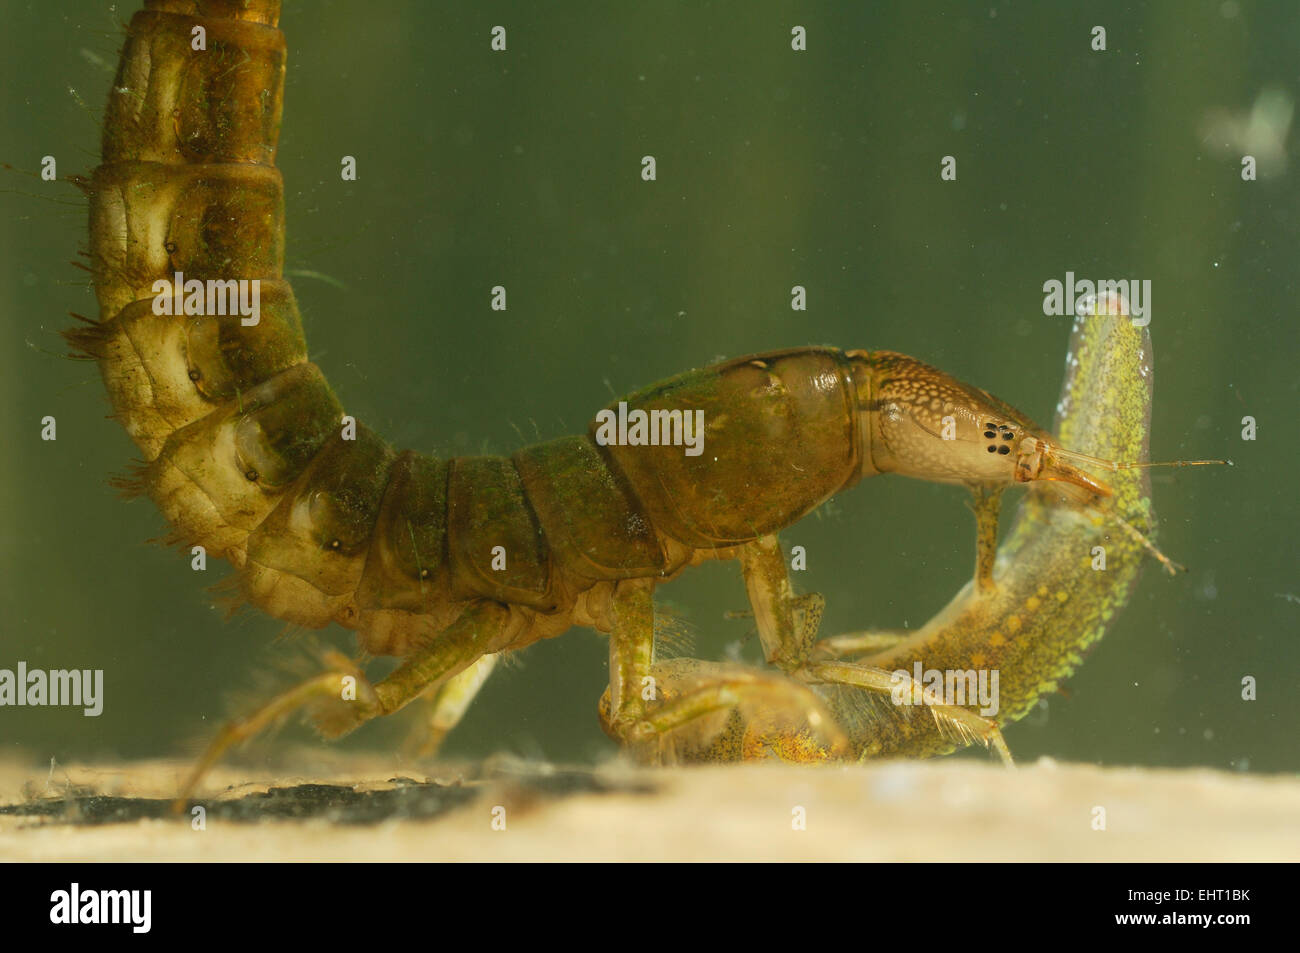 Great diving beetle larva (Dytiscus marginalis) eating Newt Larvae | Die großen Larven des Gelbrandkäfers (Dytiscus marginalis)  Stock Photo